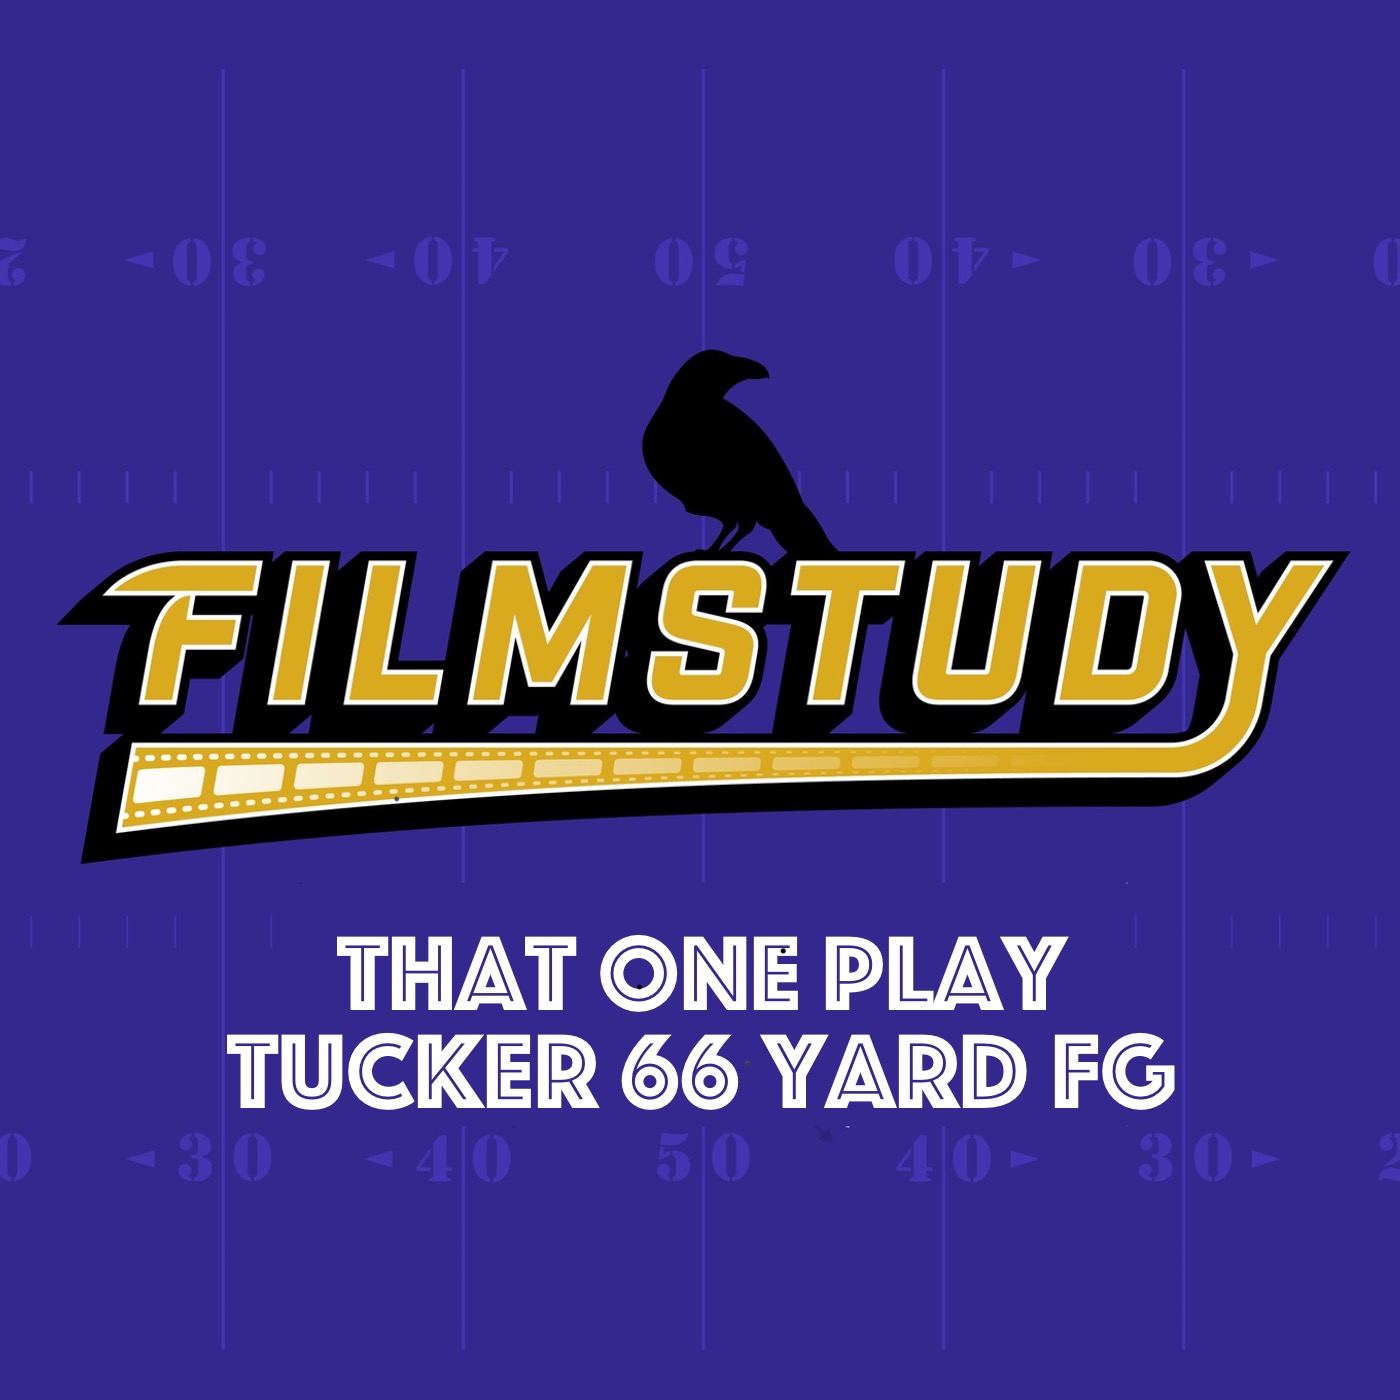 TOP: Tucker 66 Yard FG